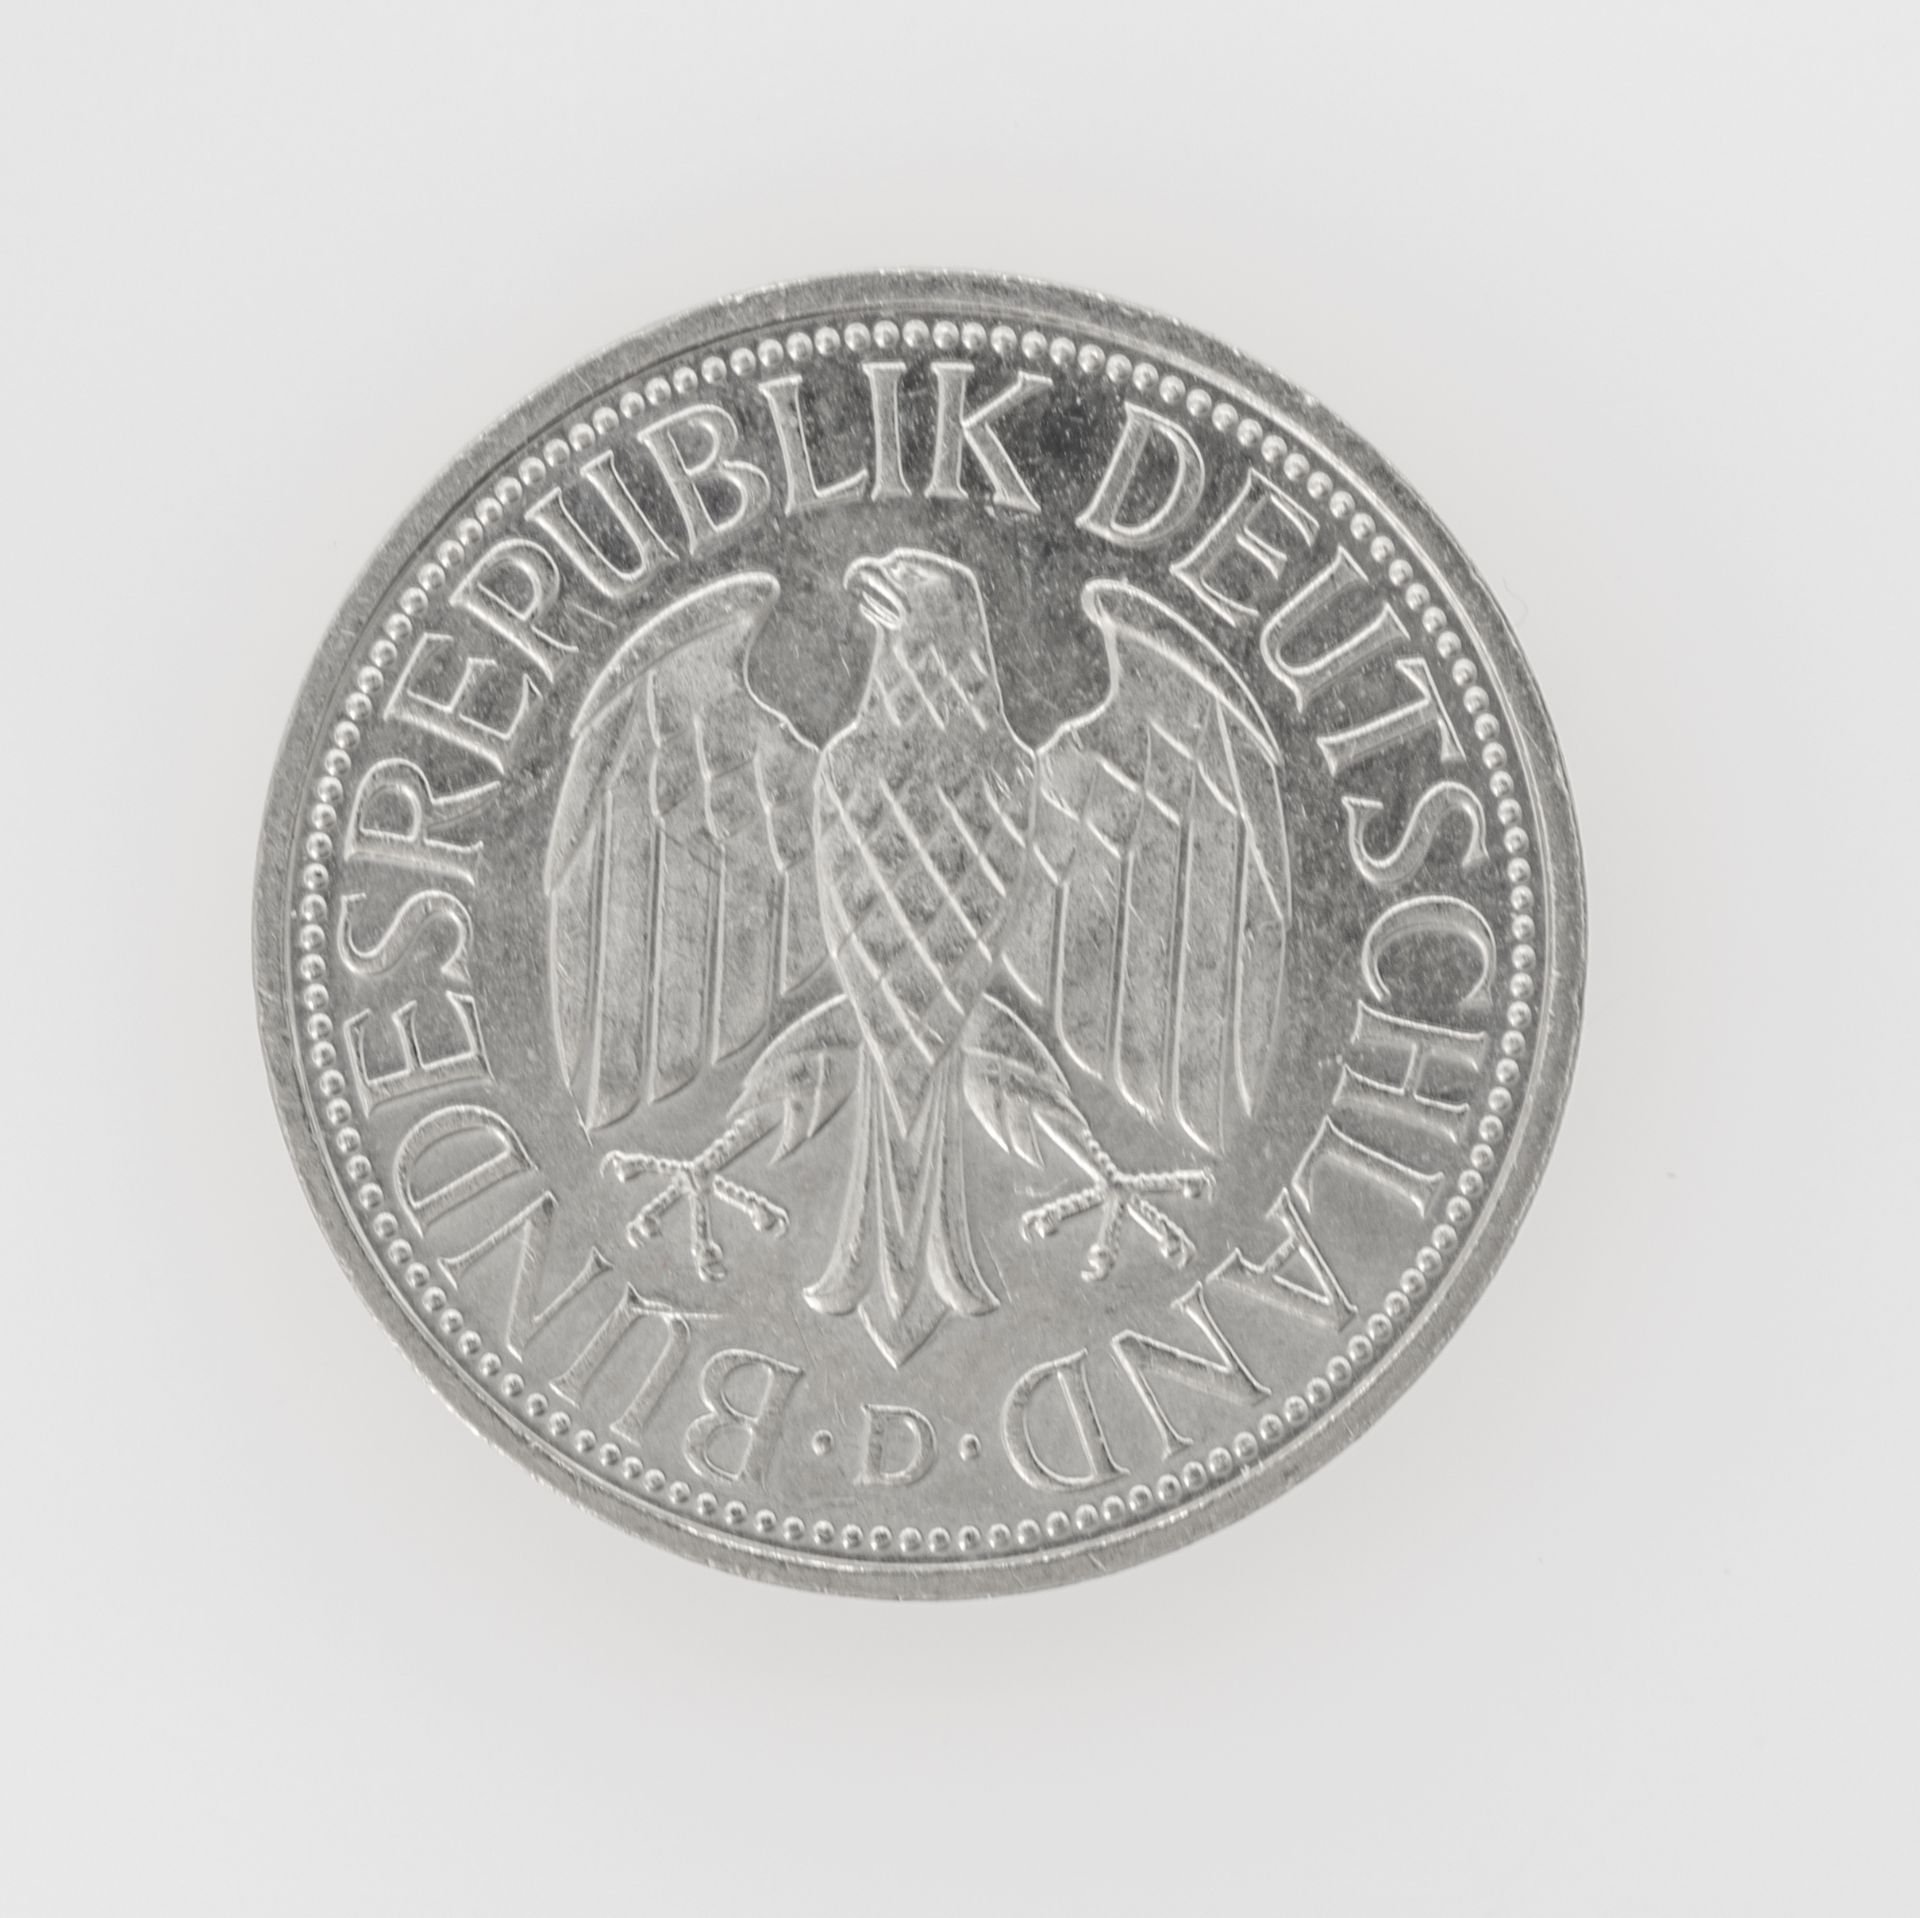 BRD 1994 D, 1 DM - Münze, Fehlprägung: Rand sehr schwach geprägt. - Bild 2 aus 3